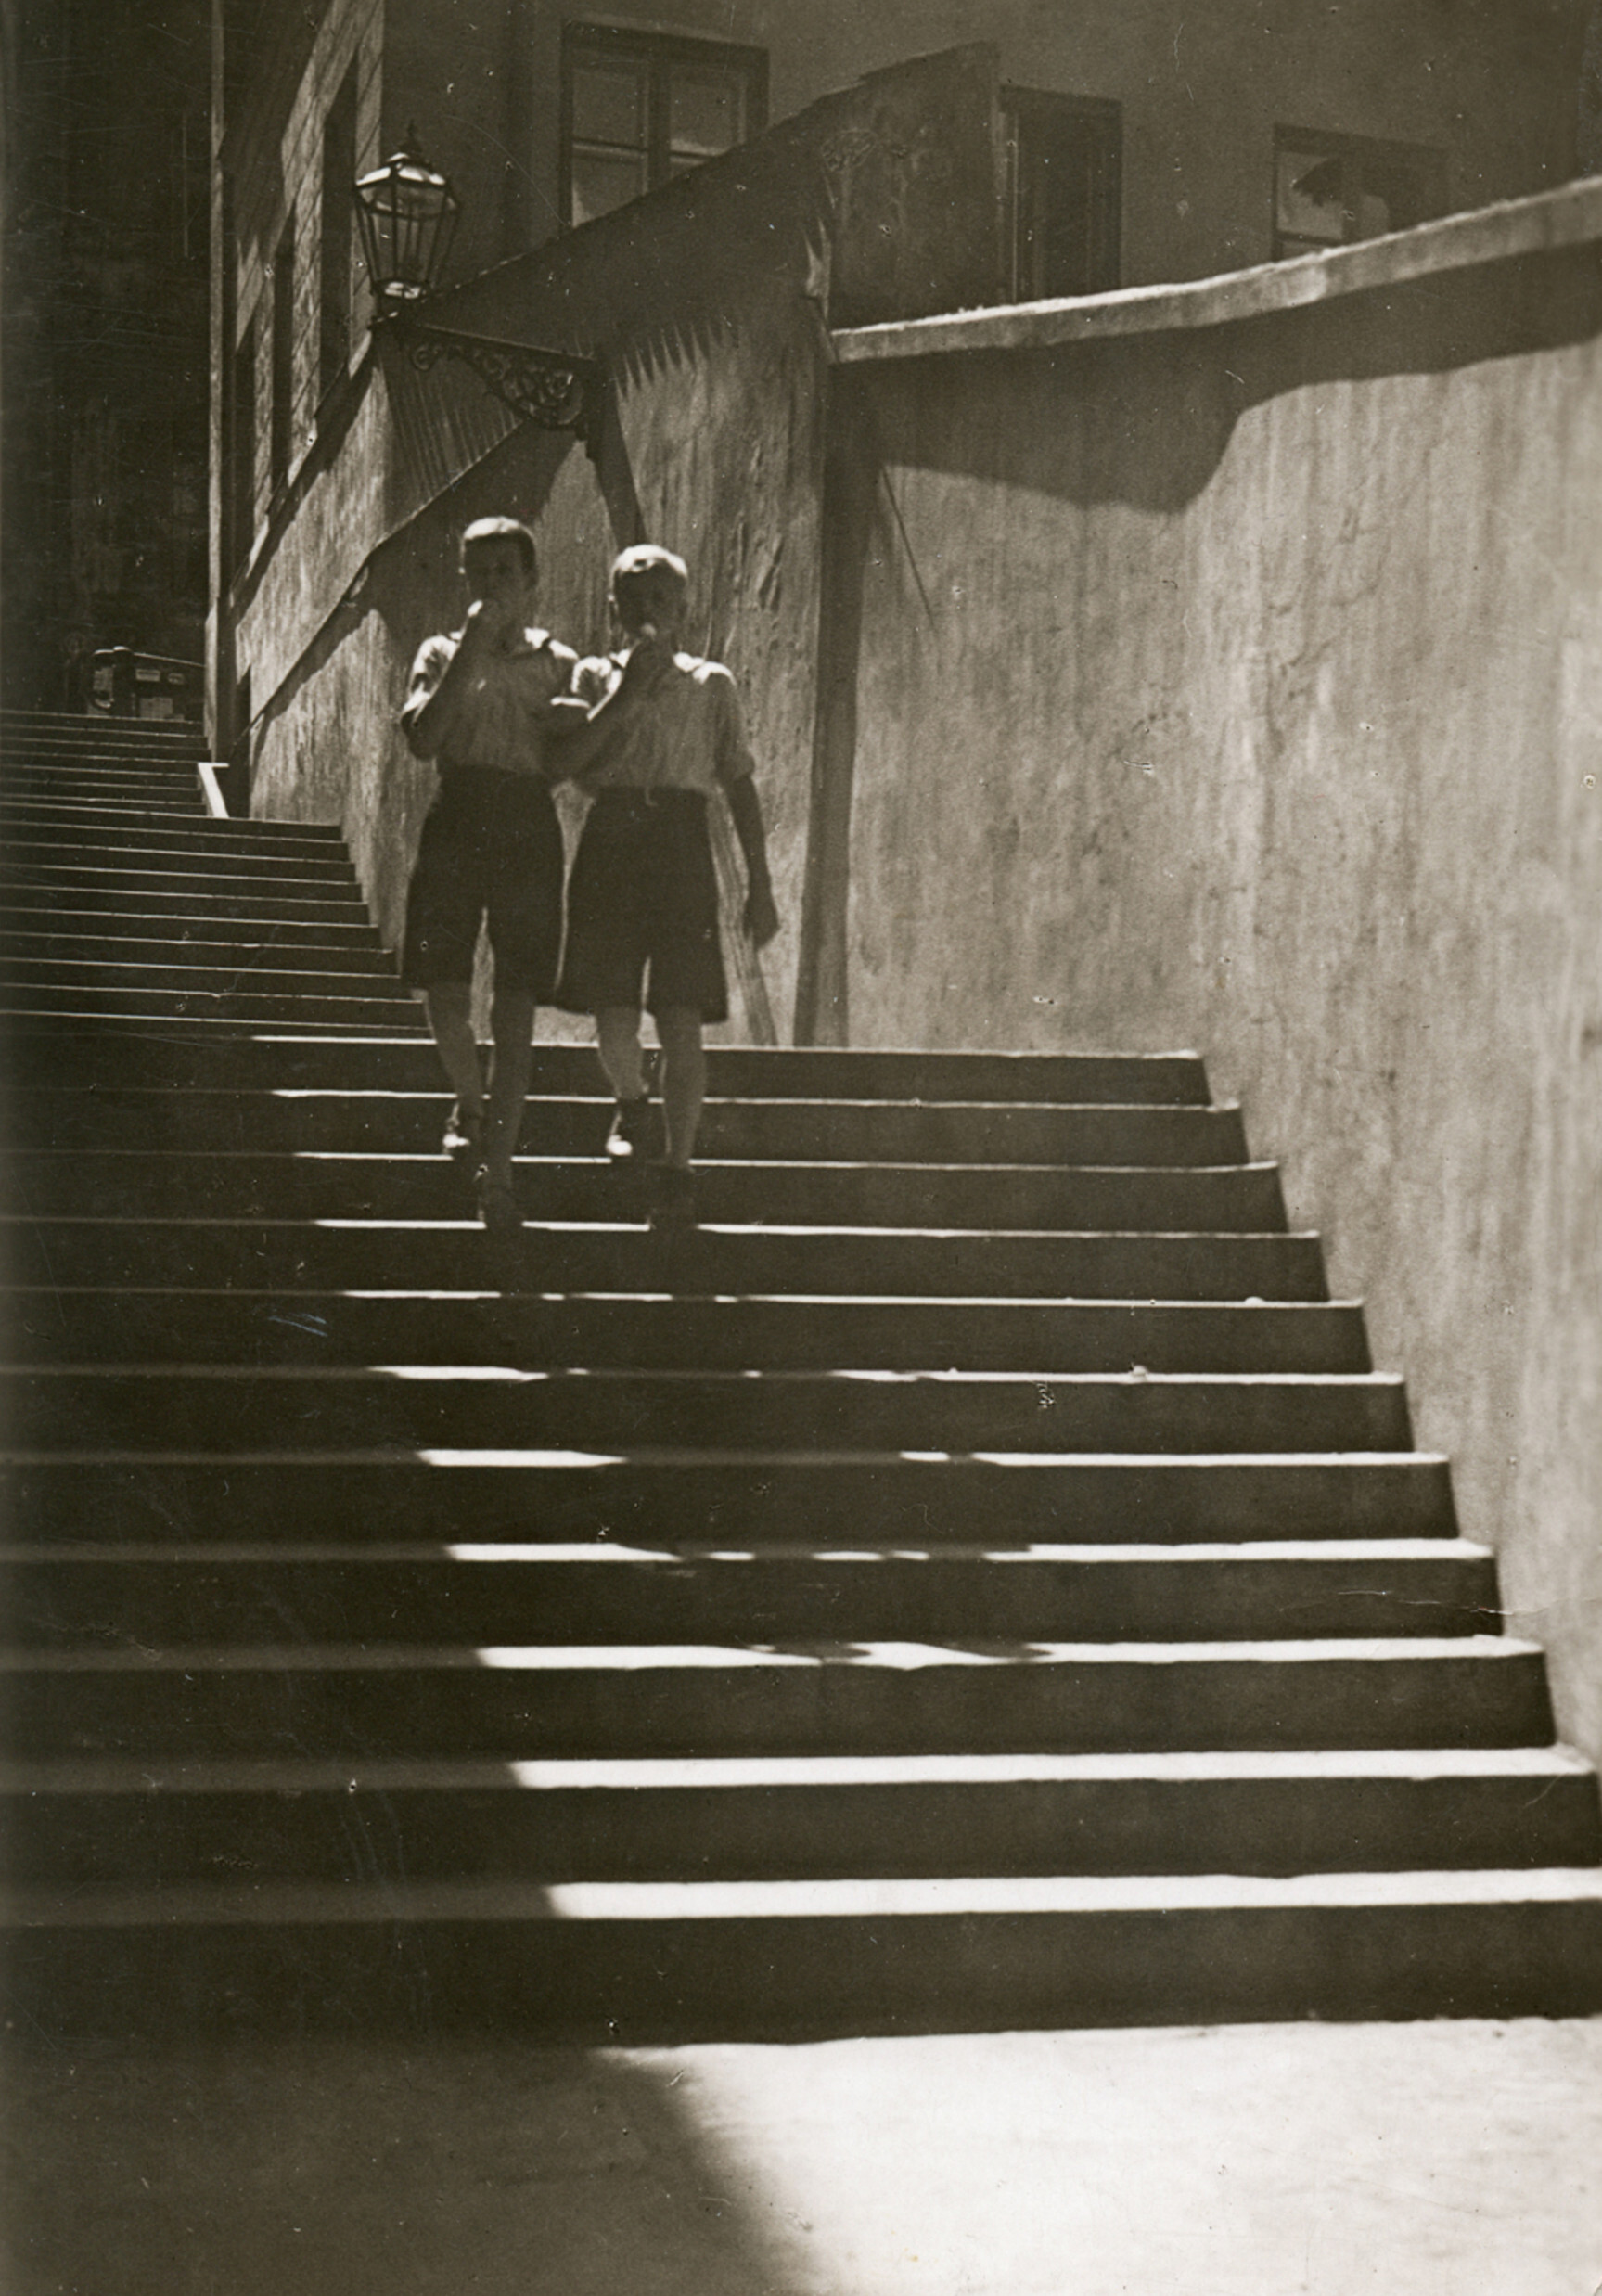 Открытка от Романа Вишняка в Варшаве его дочери Маре в Риге, 1938 г. Фотограф Роман Вишняк